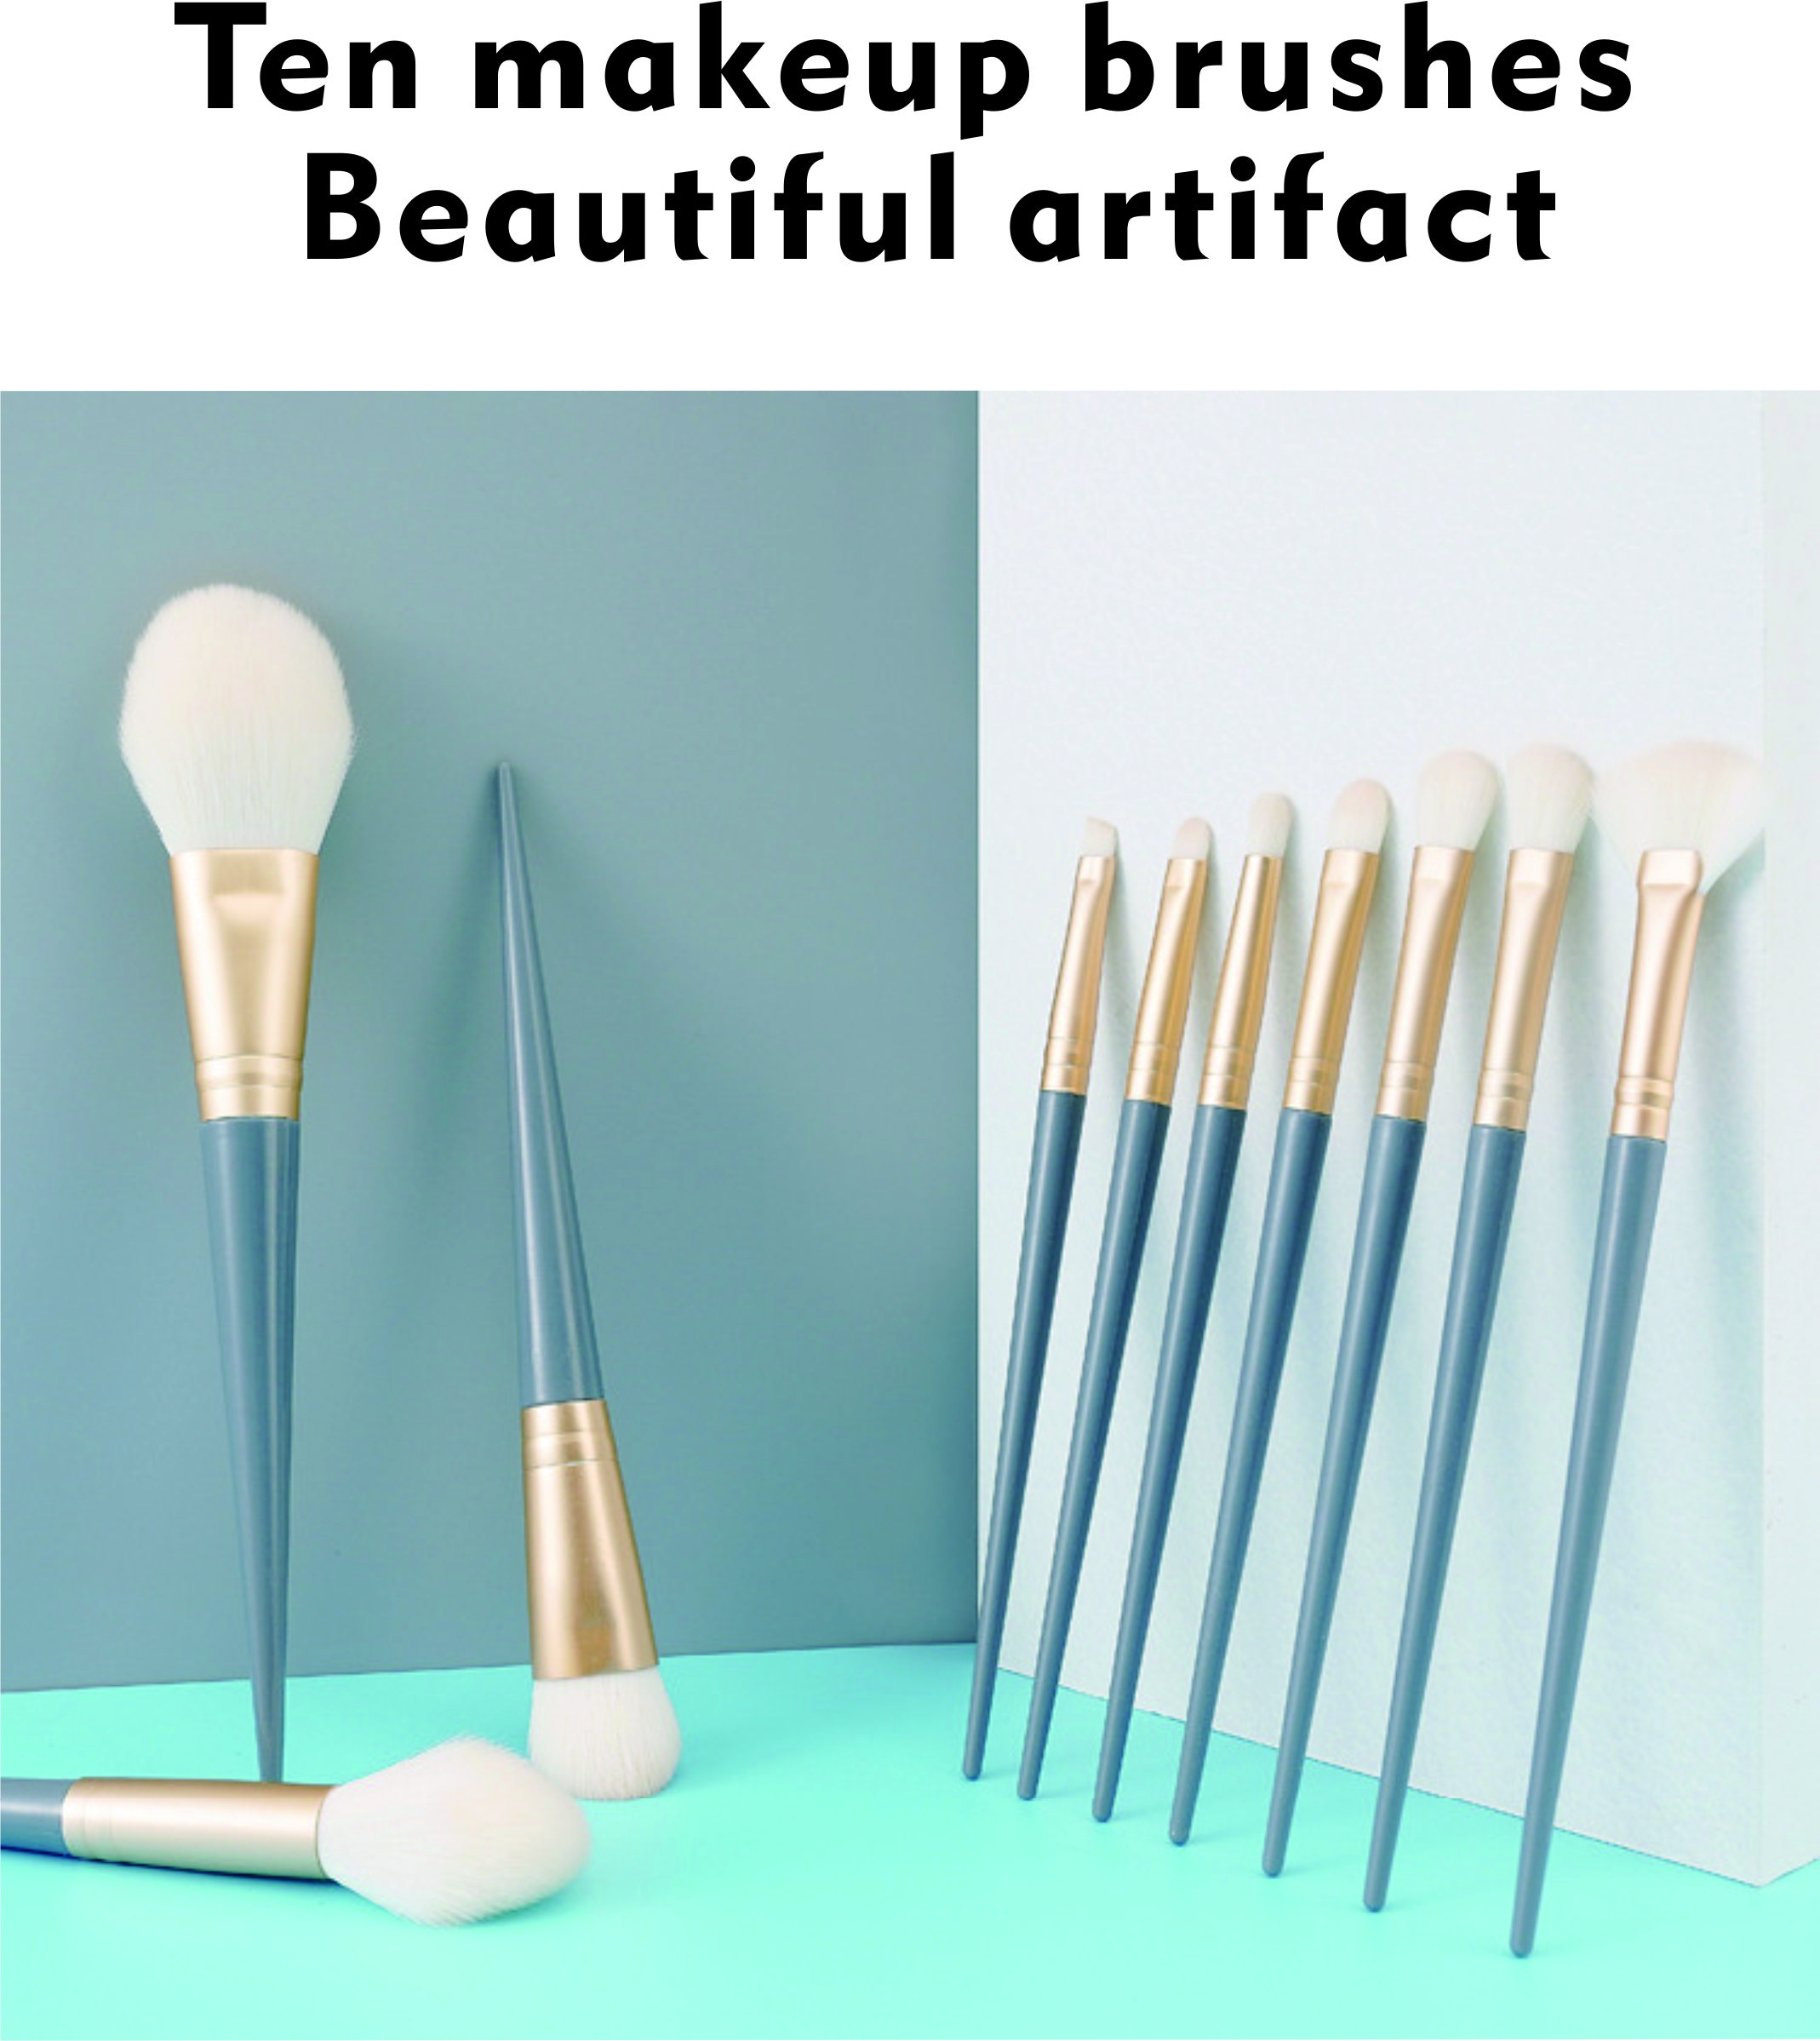 10 Makeup Brush Sets, Eye Shadow Brushes, Powder Powder Brushes, Soft Brushes, Beauty Tools, Brushes.